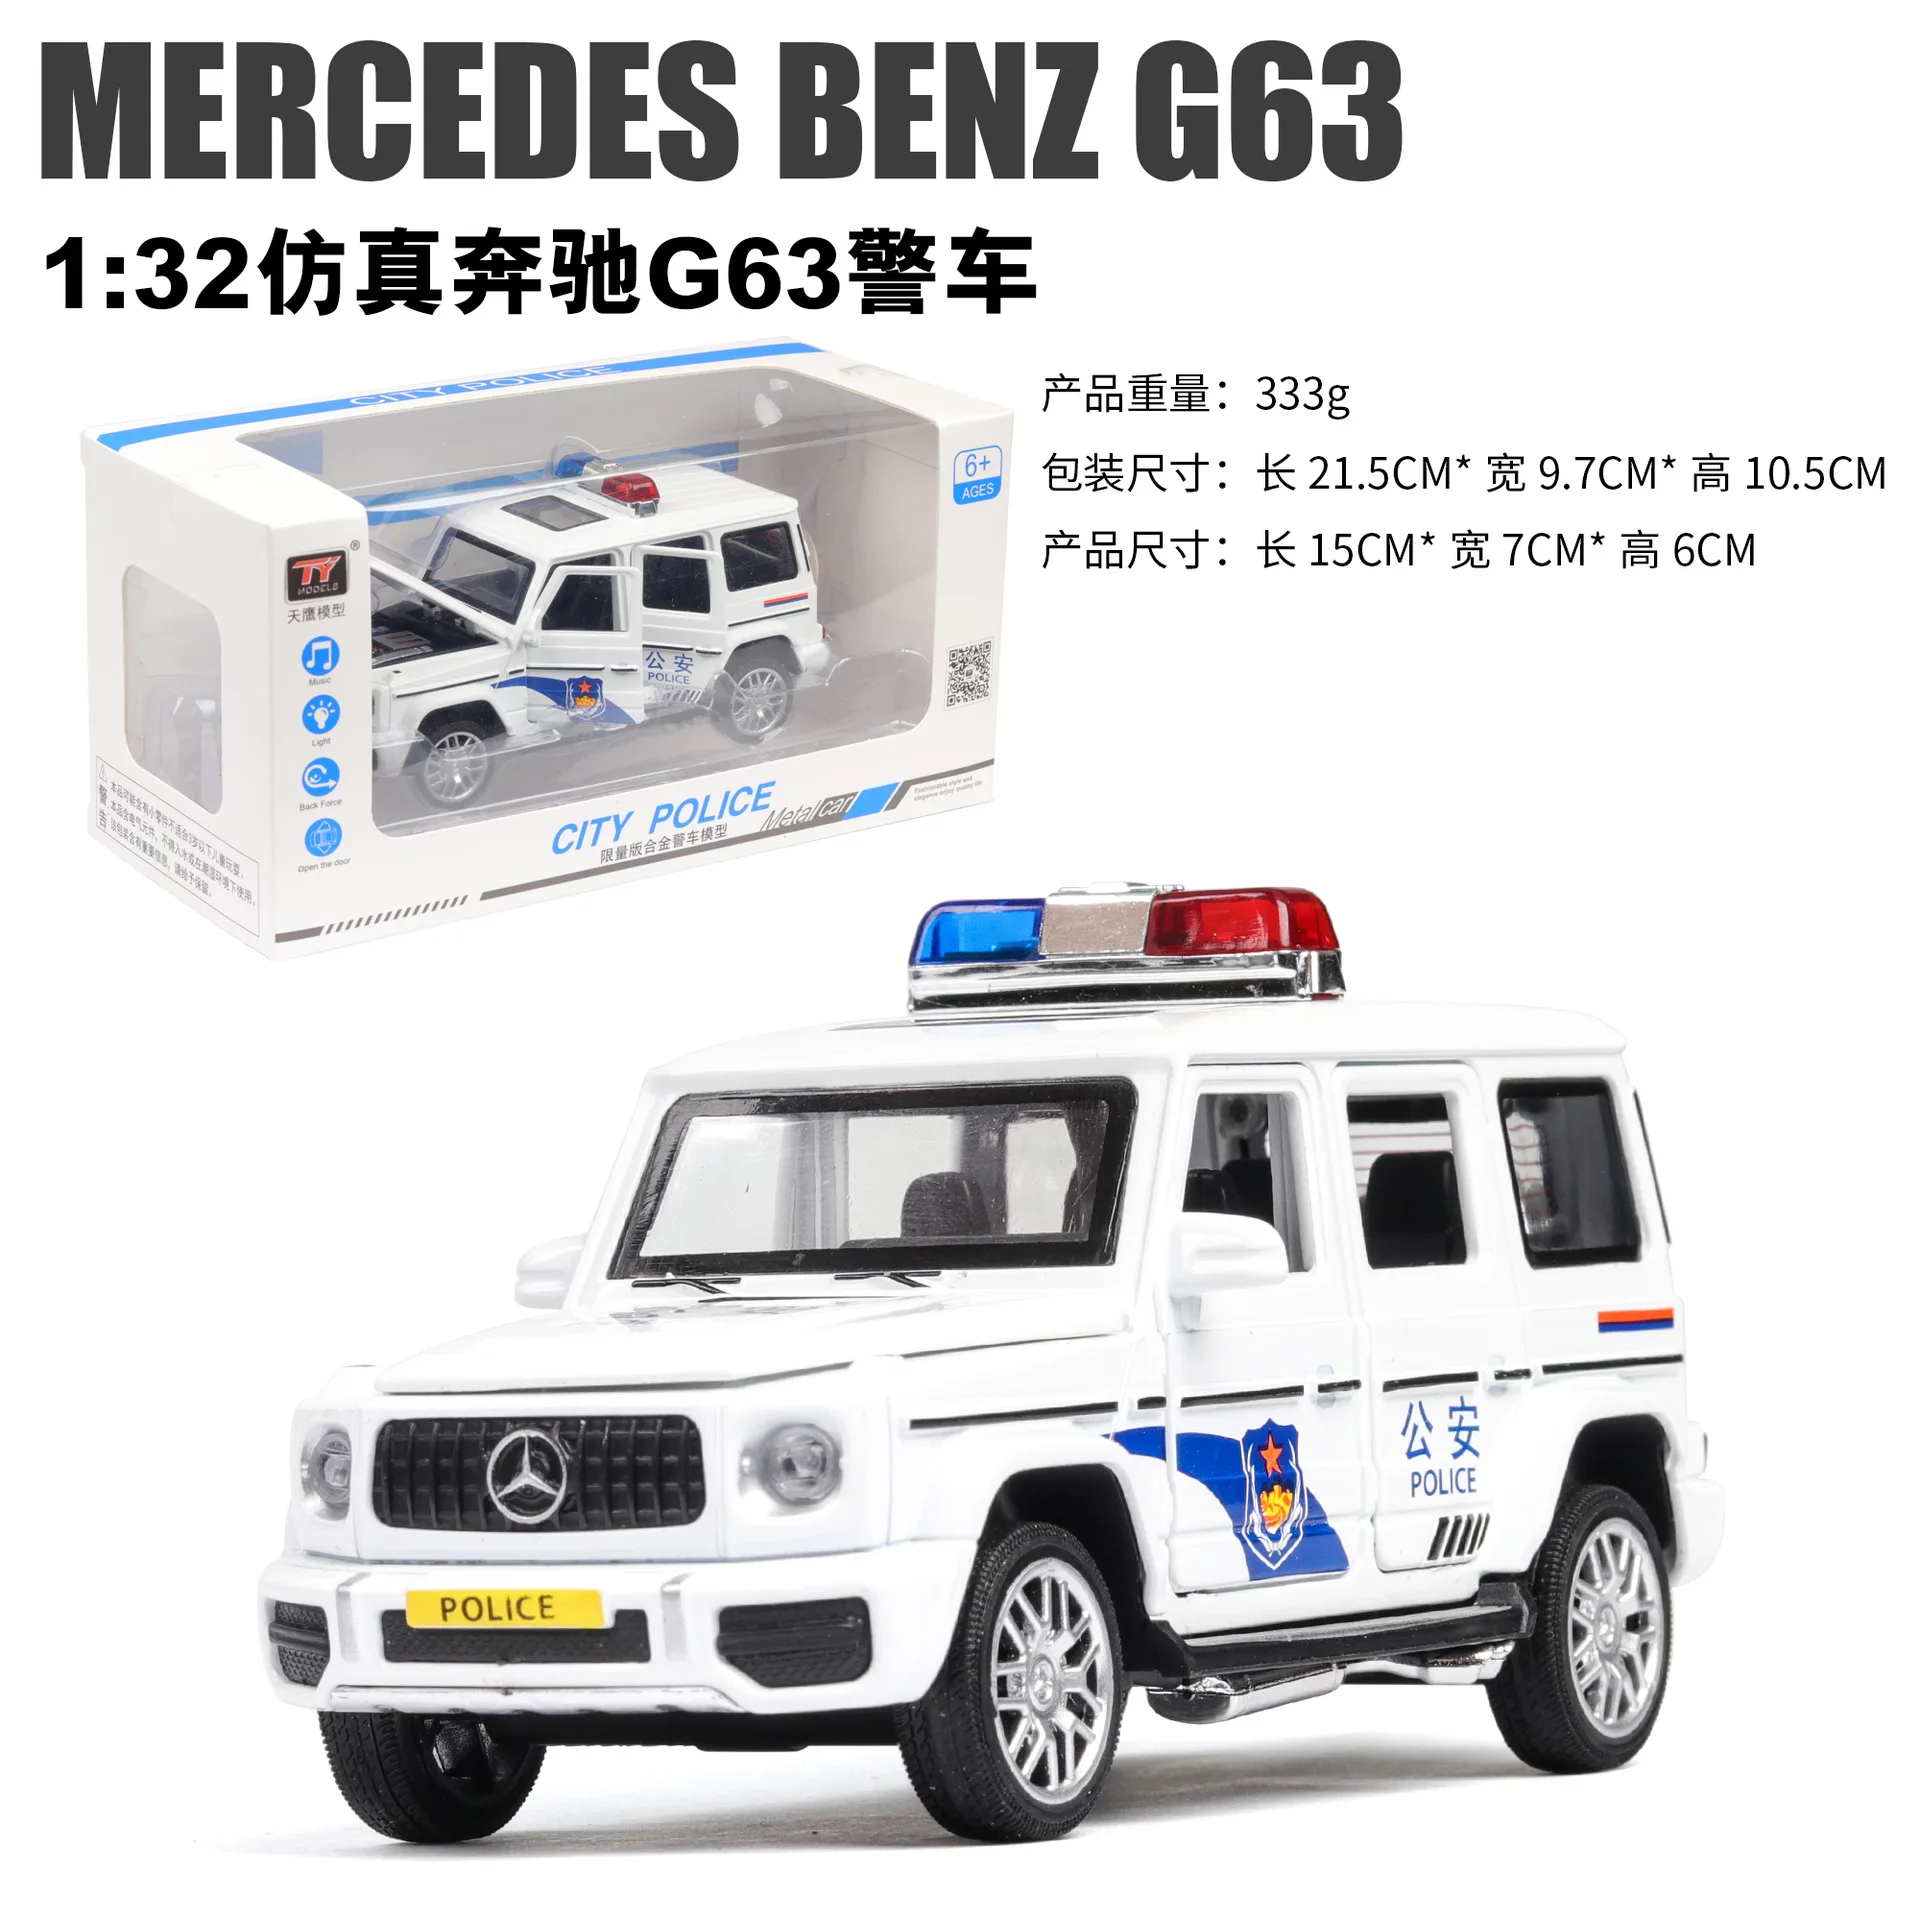 1:32 Высокая симуляция Ben G63 сплав внедорожный автомобиль модель полицейской машины детский звук и светильник Вытяните назад игрушечный автомобиль - Цвет: 8928DW with box